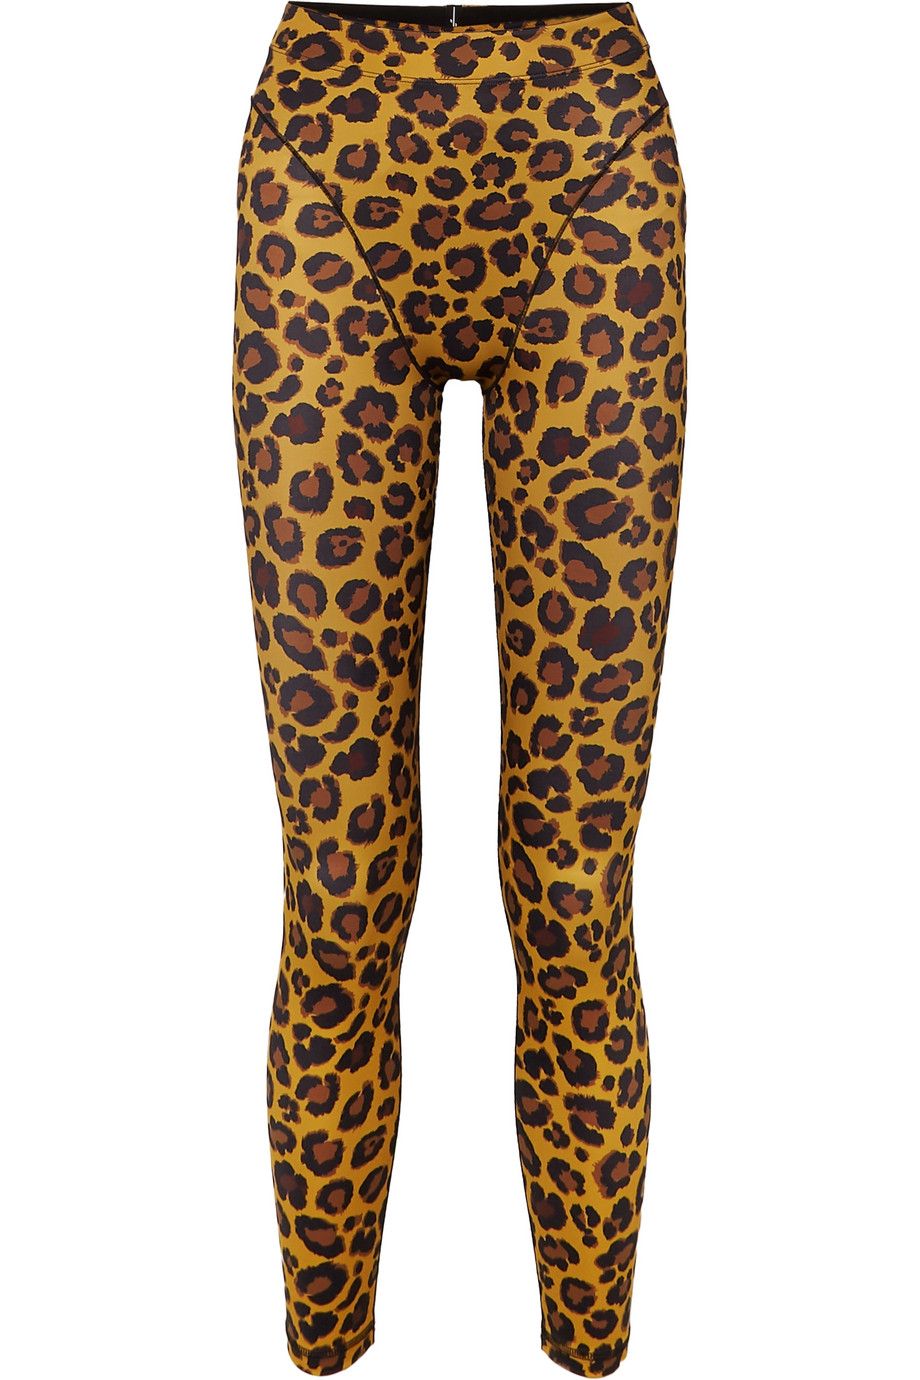 Leopard-print stretch leggings